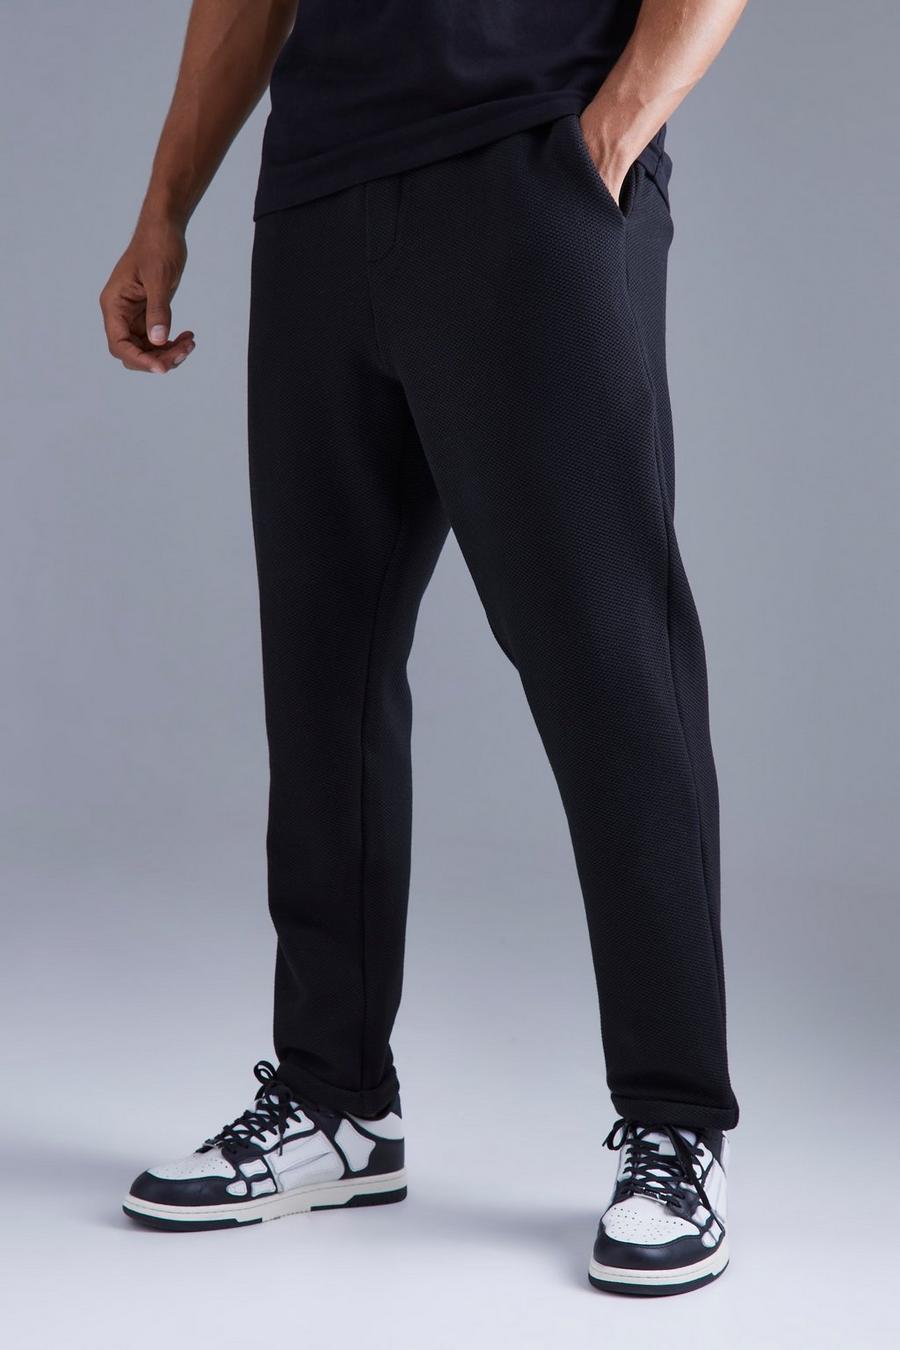 Black Toelopende Elastische Pantalons Met Textuur